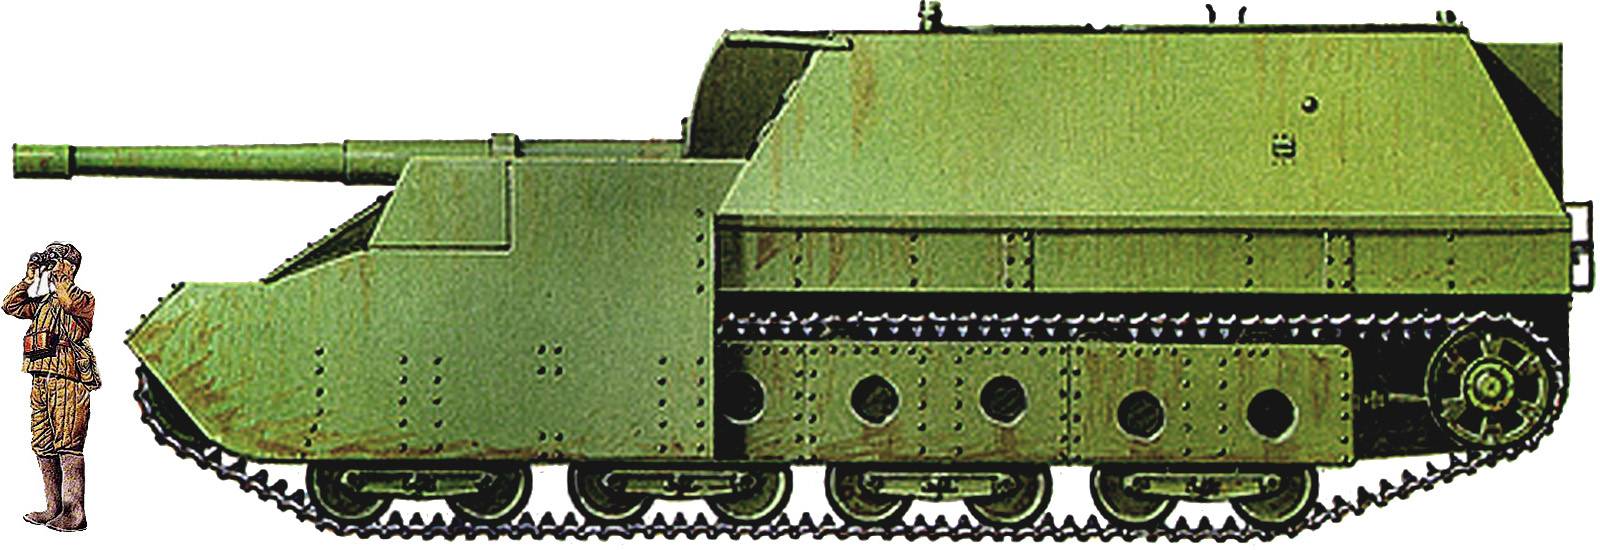 Самоходные артиллерийские установки су-14 / книга: тяжёлый танк т-35 / библиотека / главная / арсенал-инфо.рф